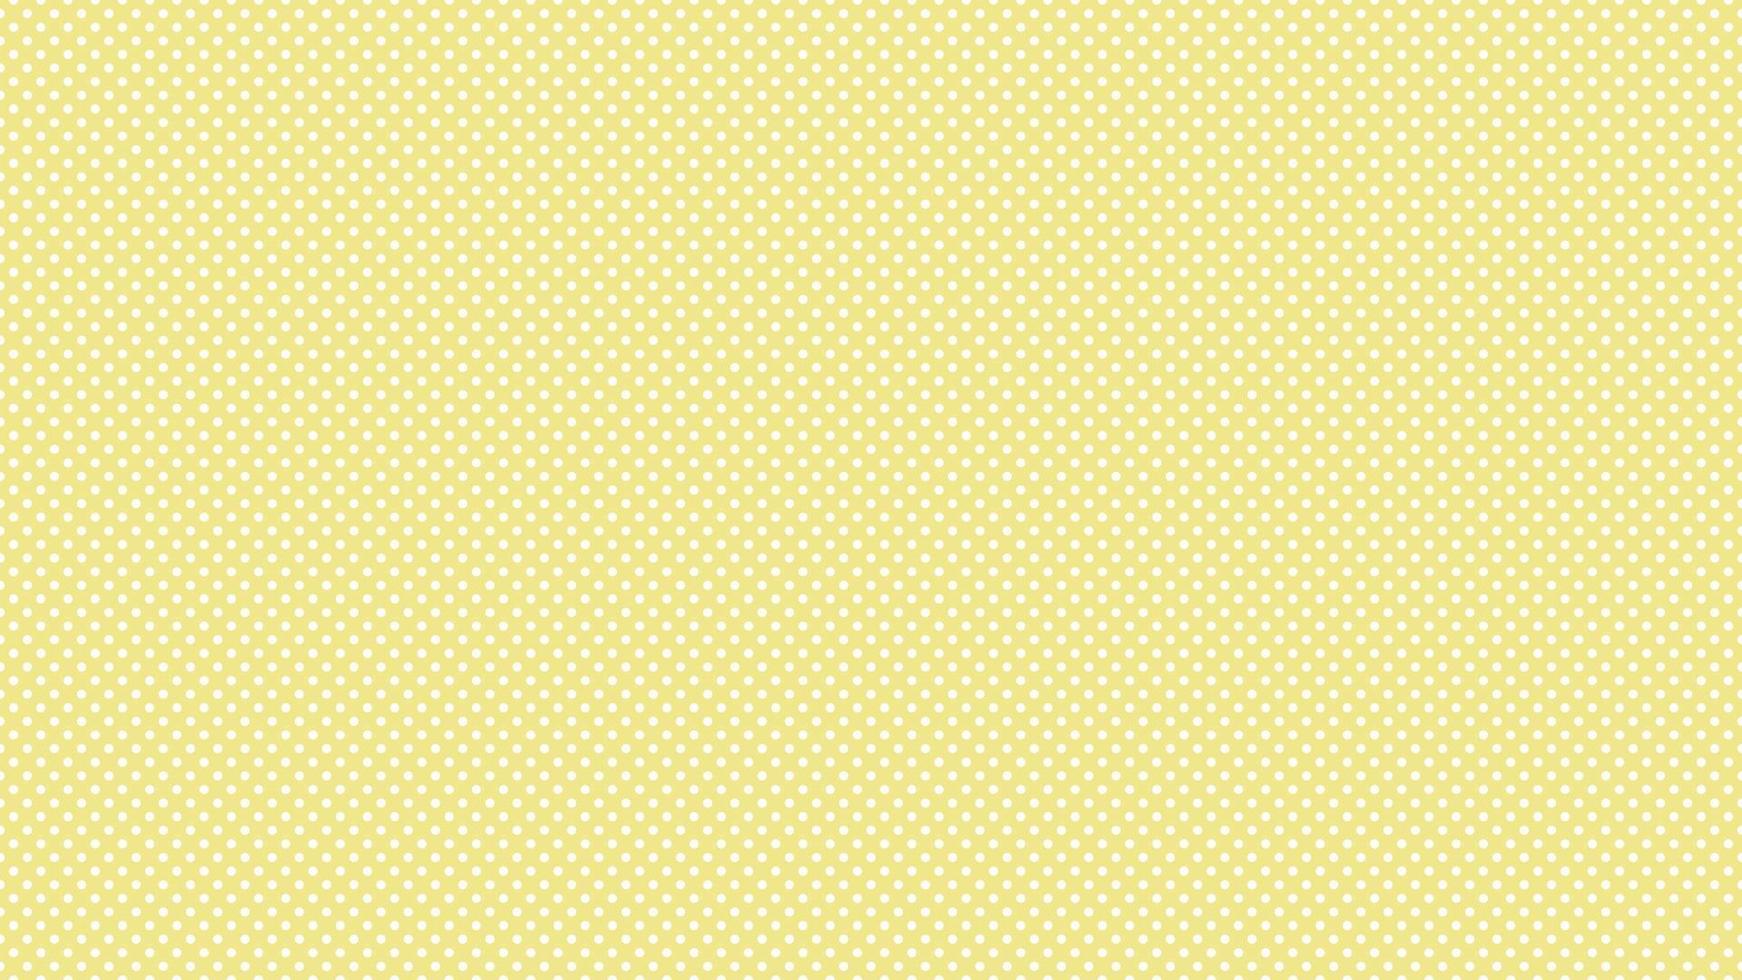 bianca colore polka puntini al di sopra di cachi giallo sfondo vettore